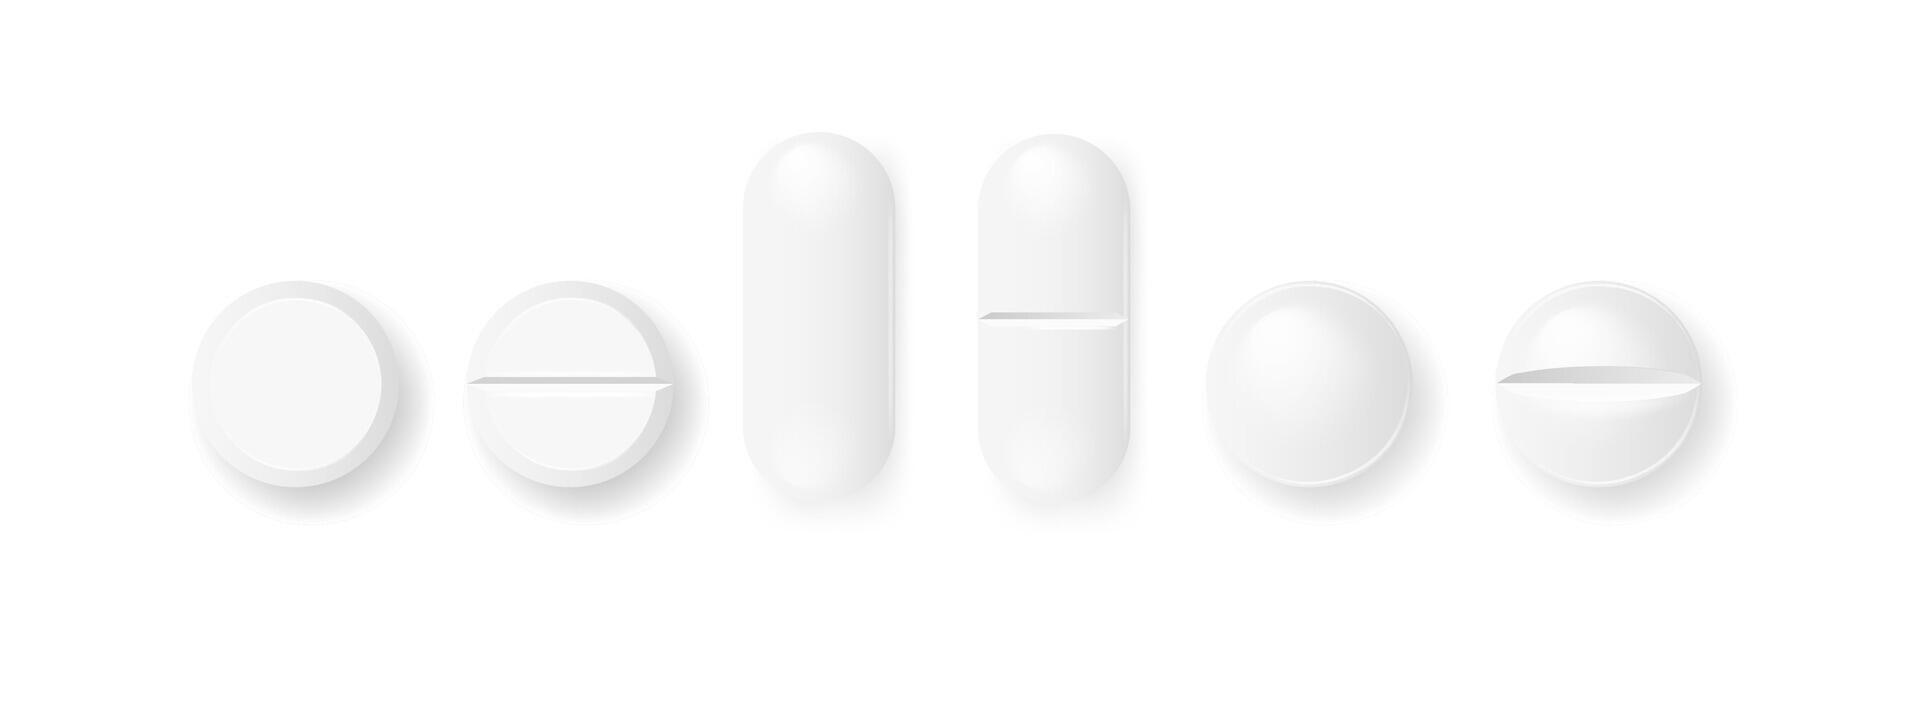 pastillas y cápsulas medicamentos tabletas vector